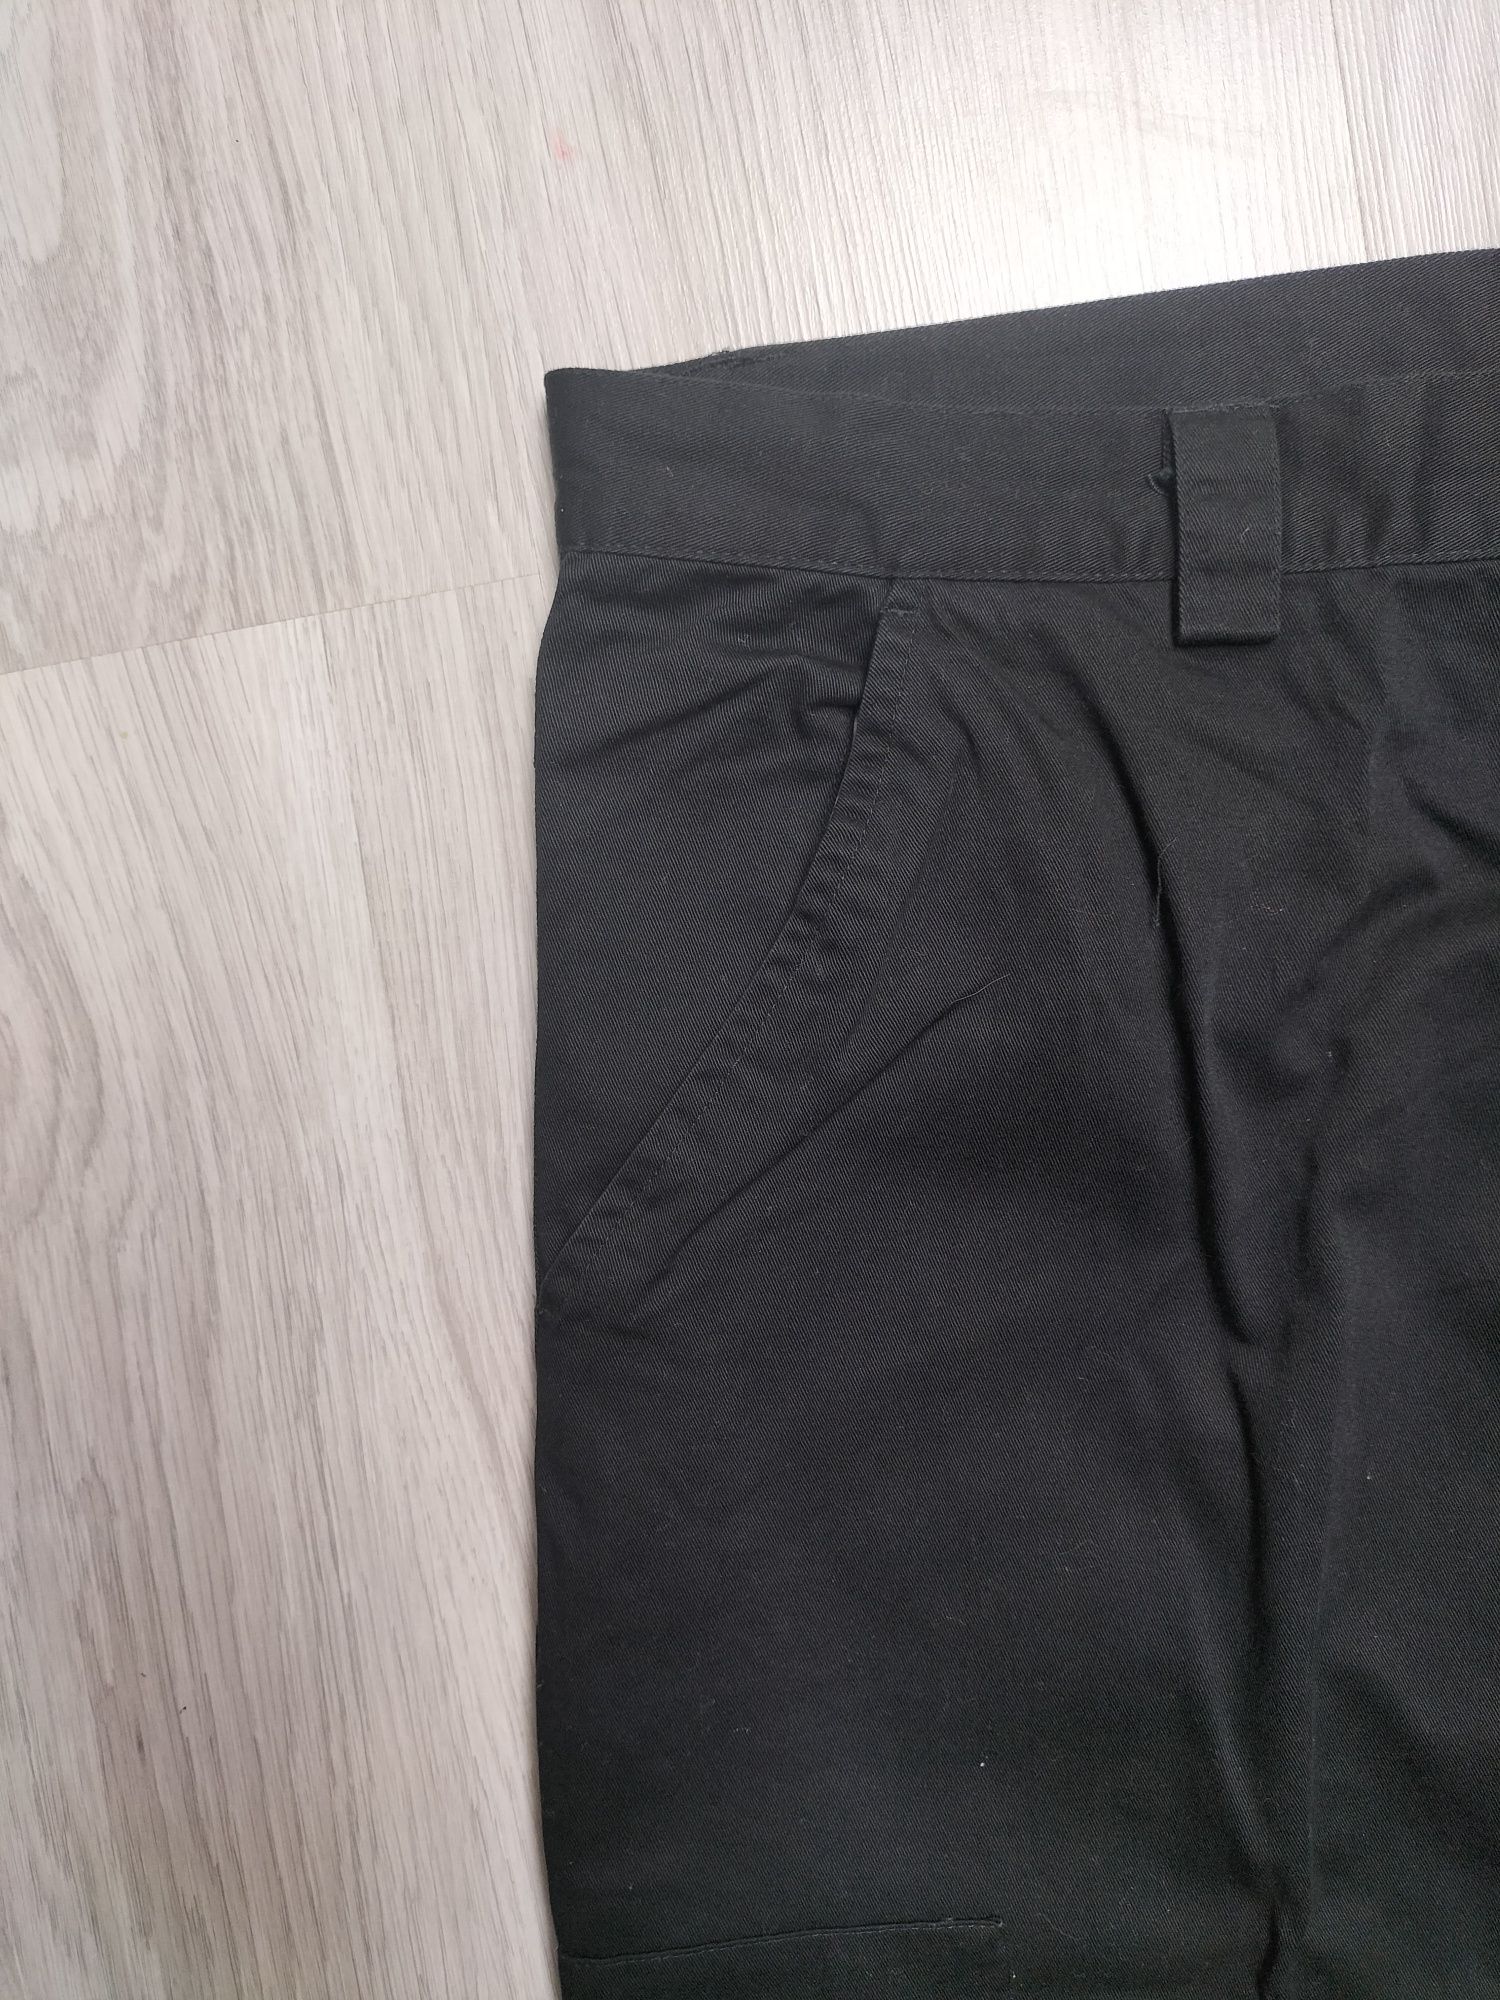 Duże szerokie prosta nogawka czarne bojówki spodnie męskie XXXL 3XL